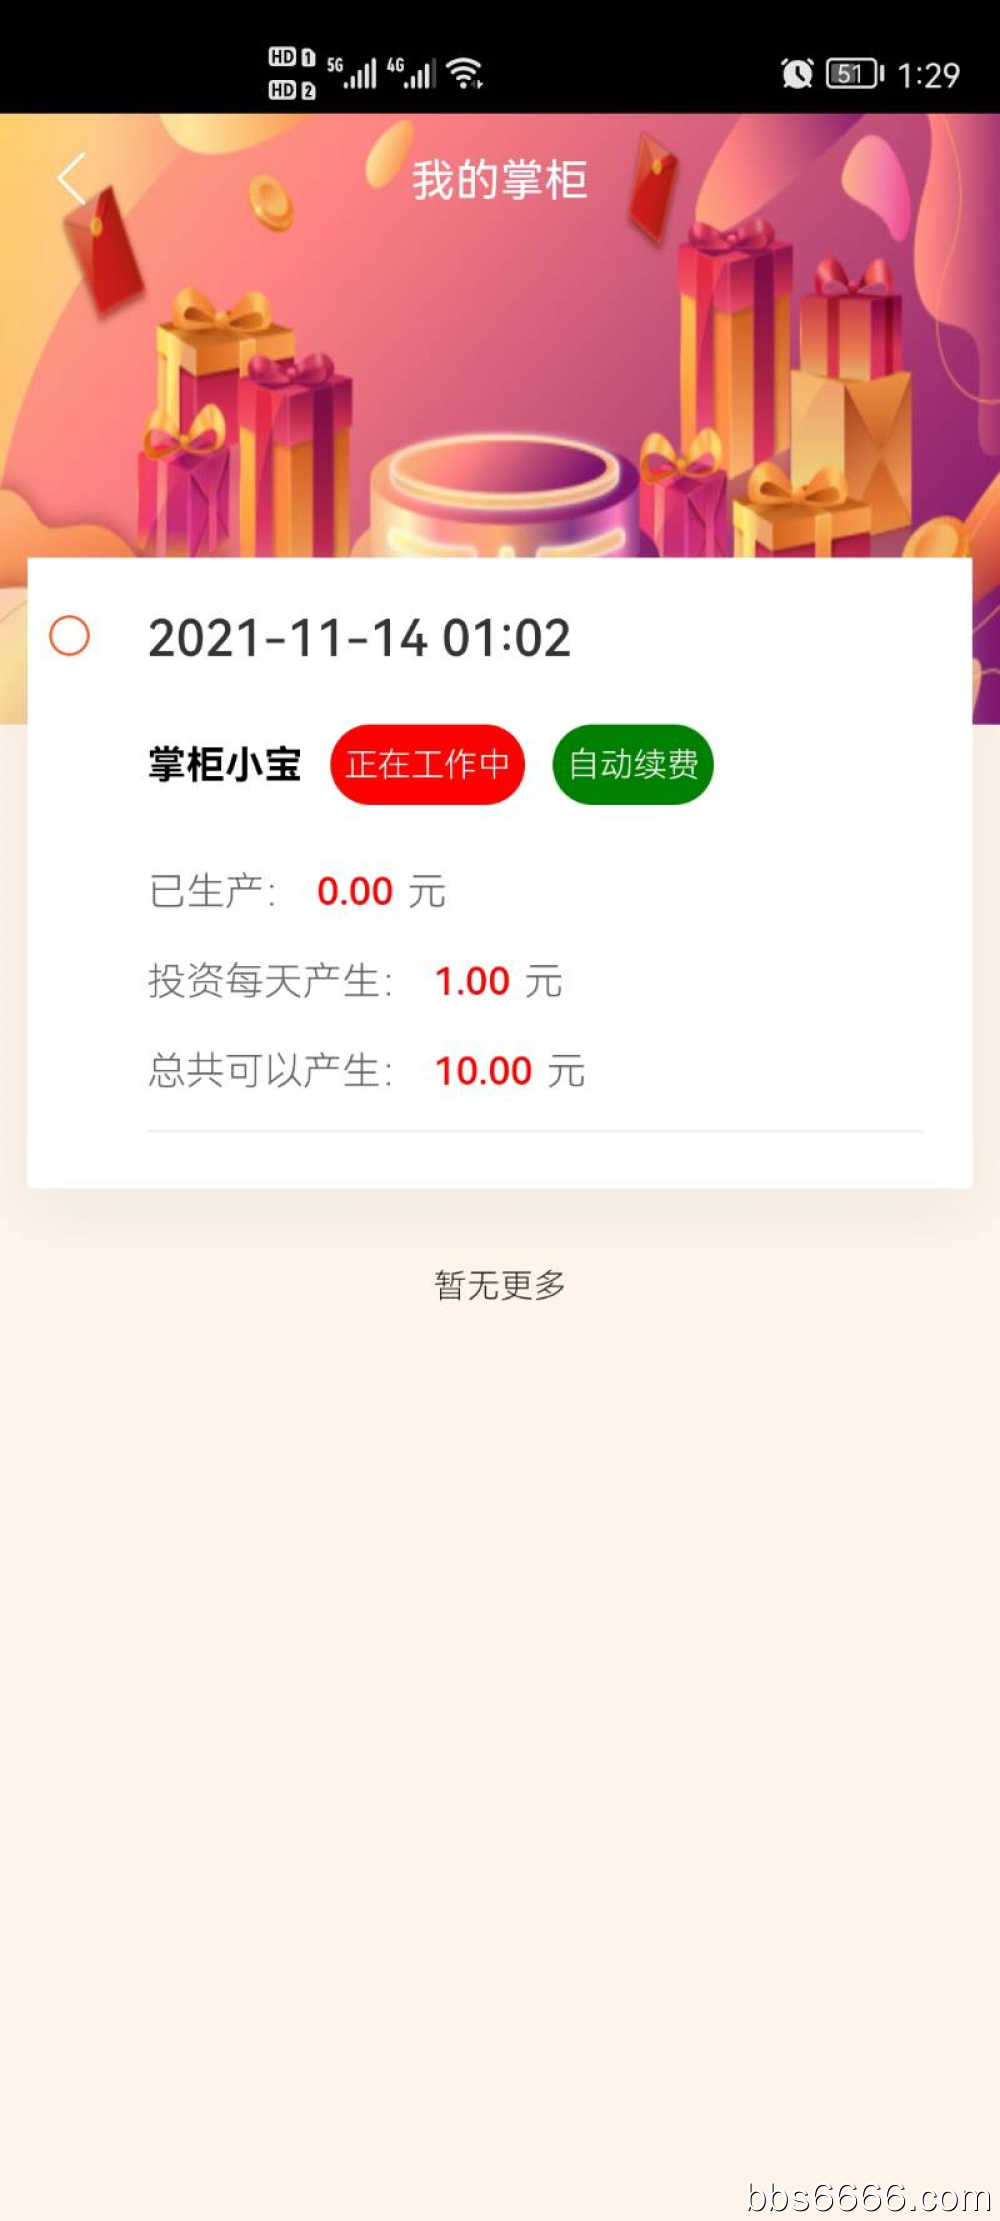 Screenshot_20211114_012905_com.xiaozhanggui.jpg